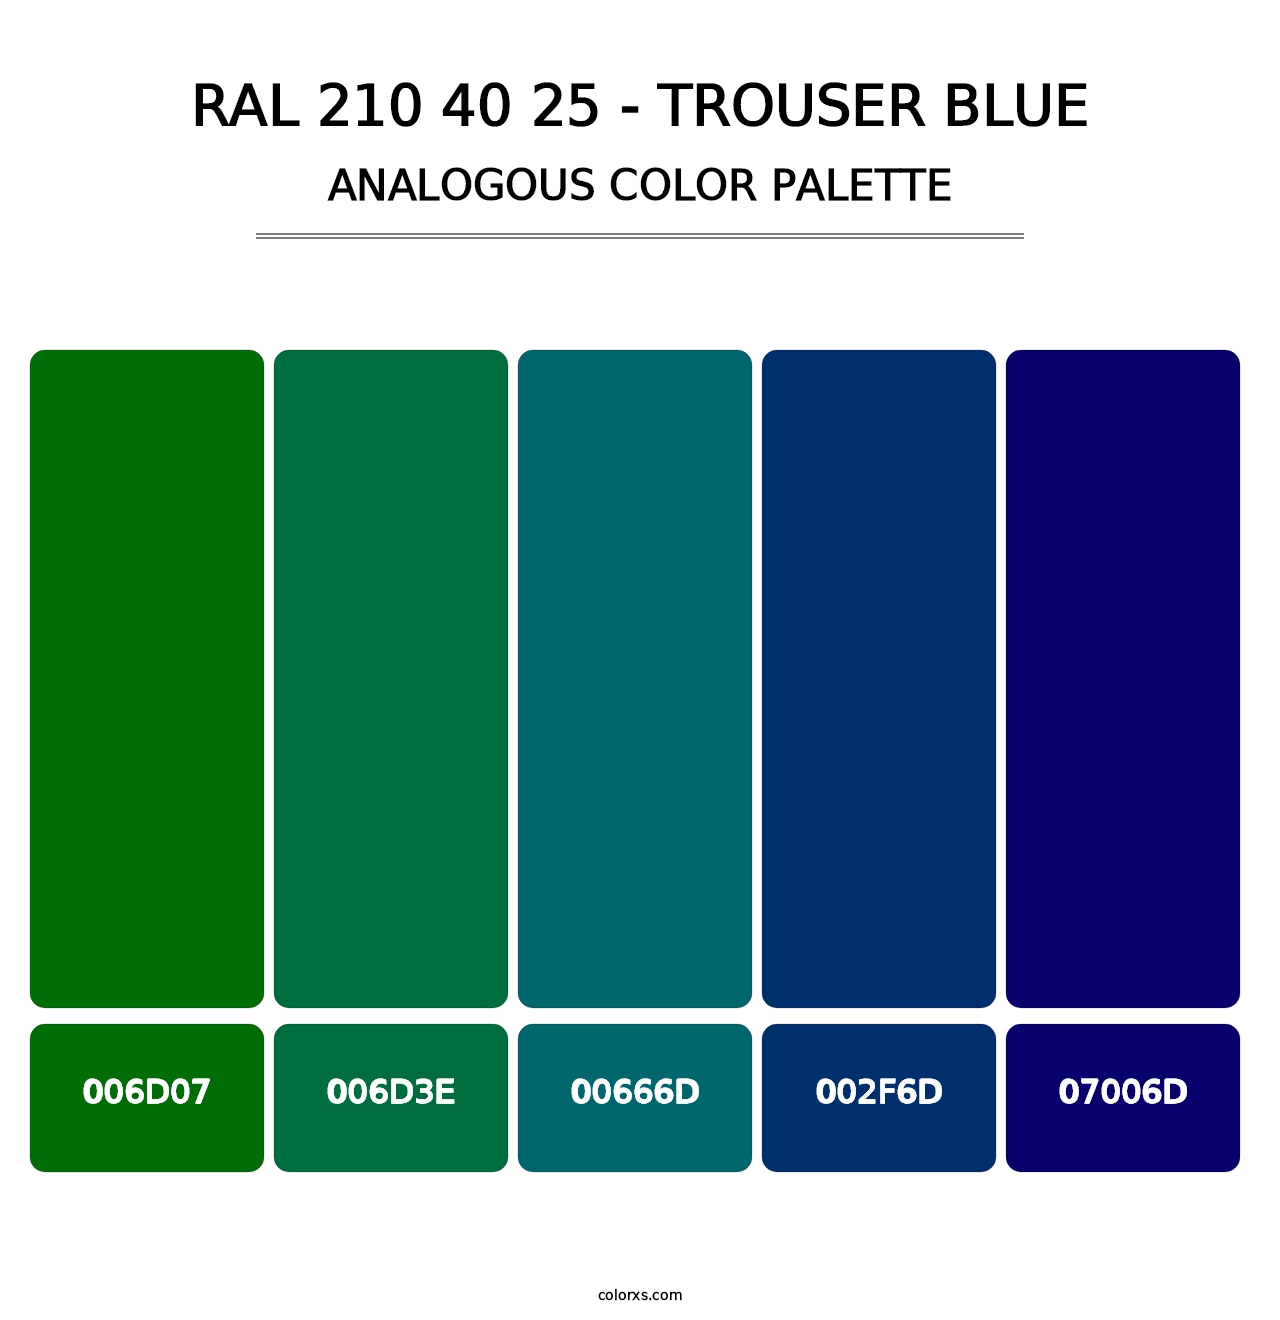 RAL 210 40 25 - Trouser Blue - Analogous Color Palette